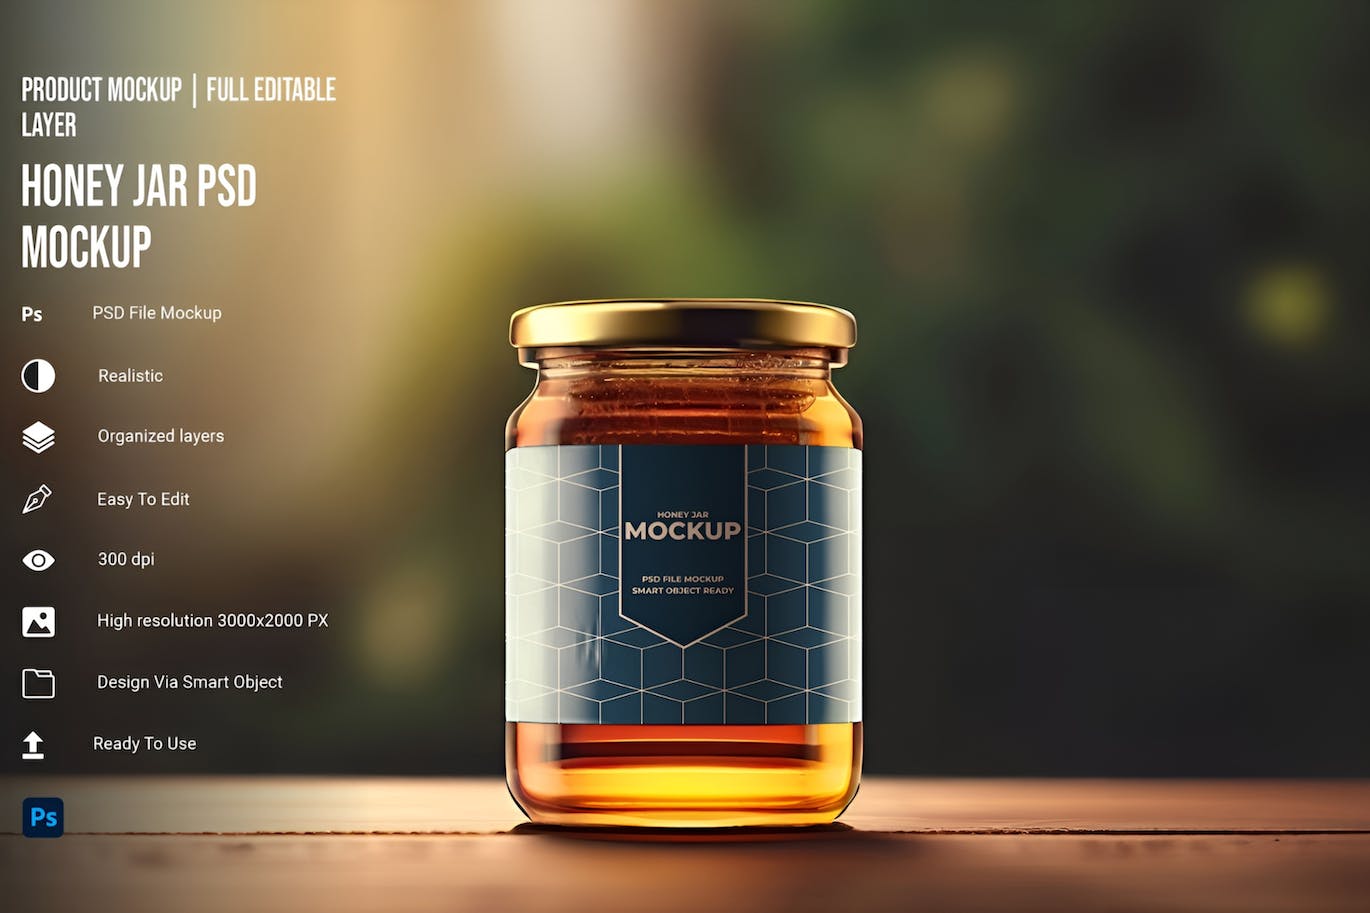 蜂蜜罐包装设计 PSD 样机 (JPG,PSD)